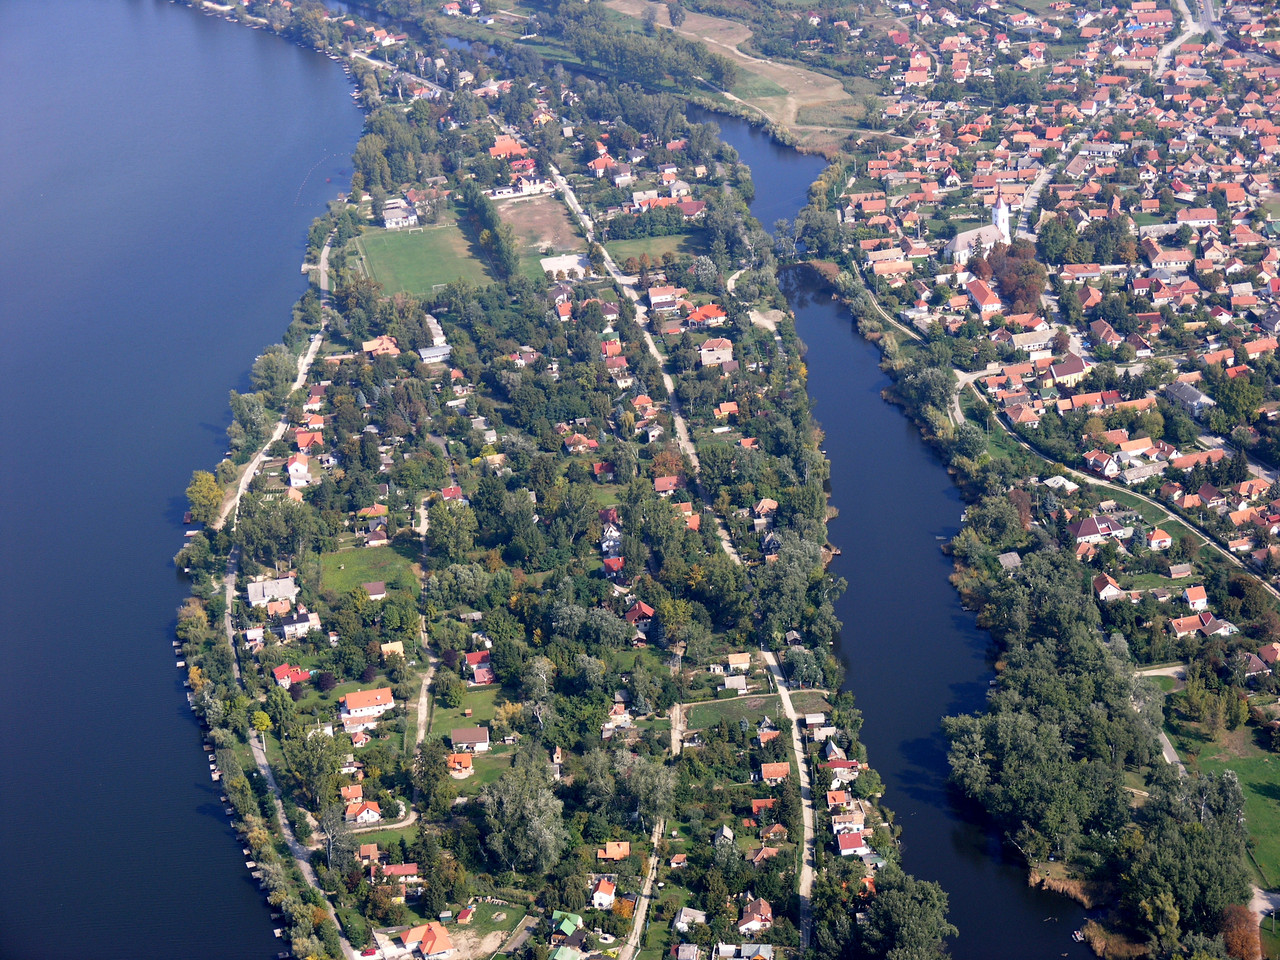 The Danube river